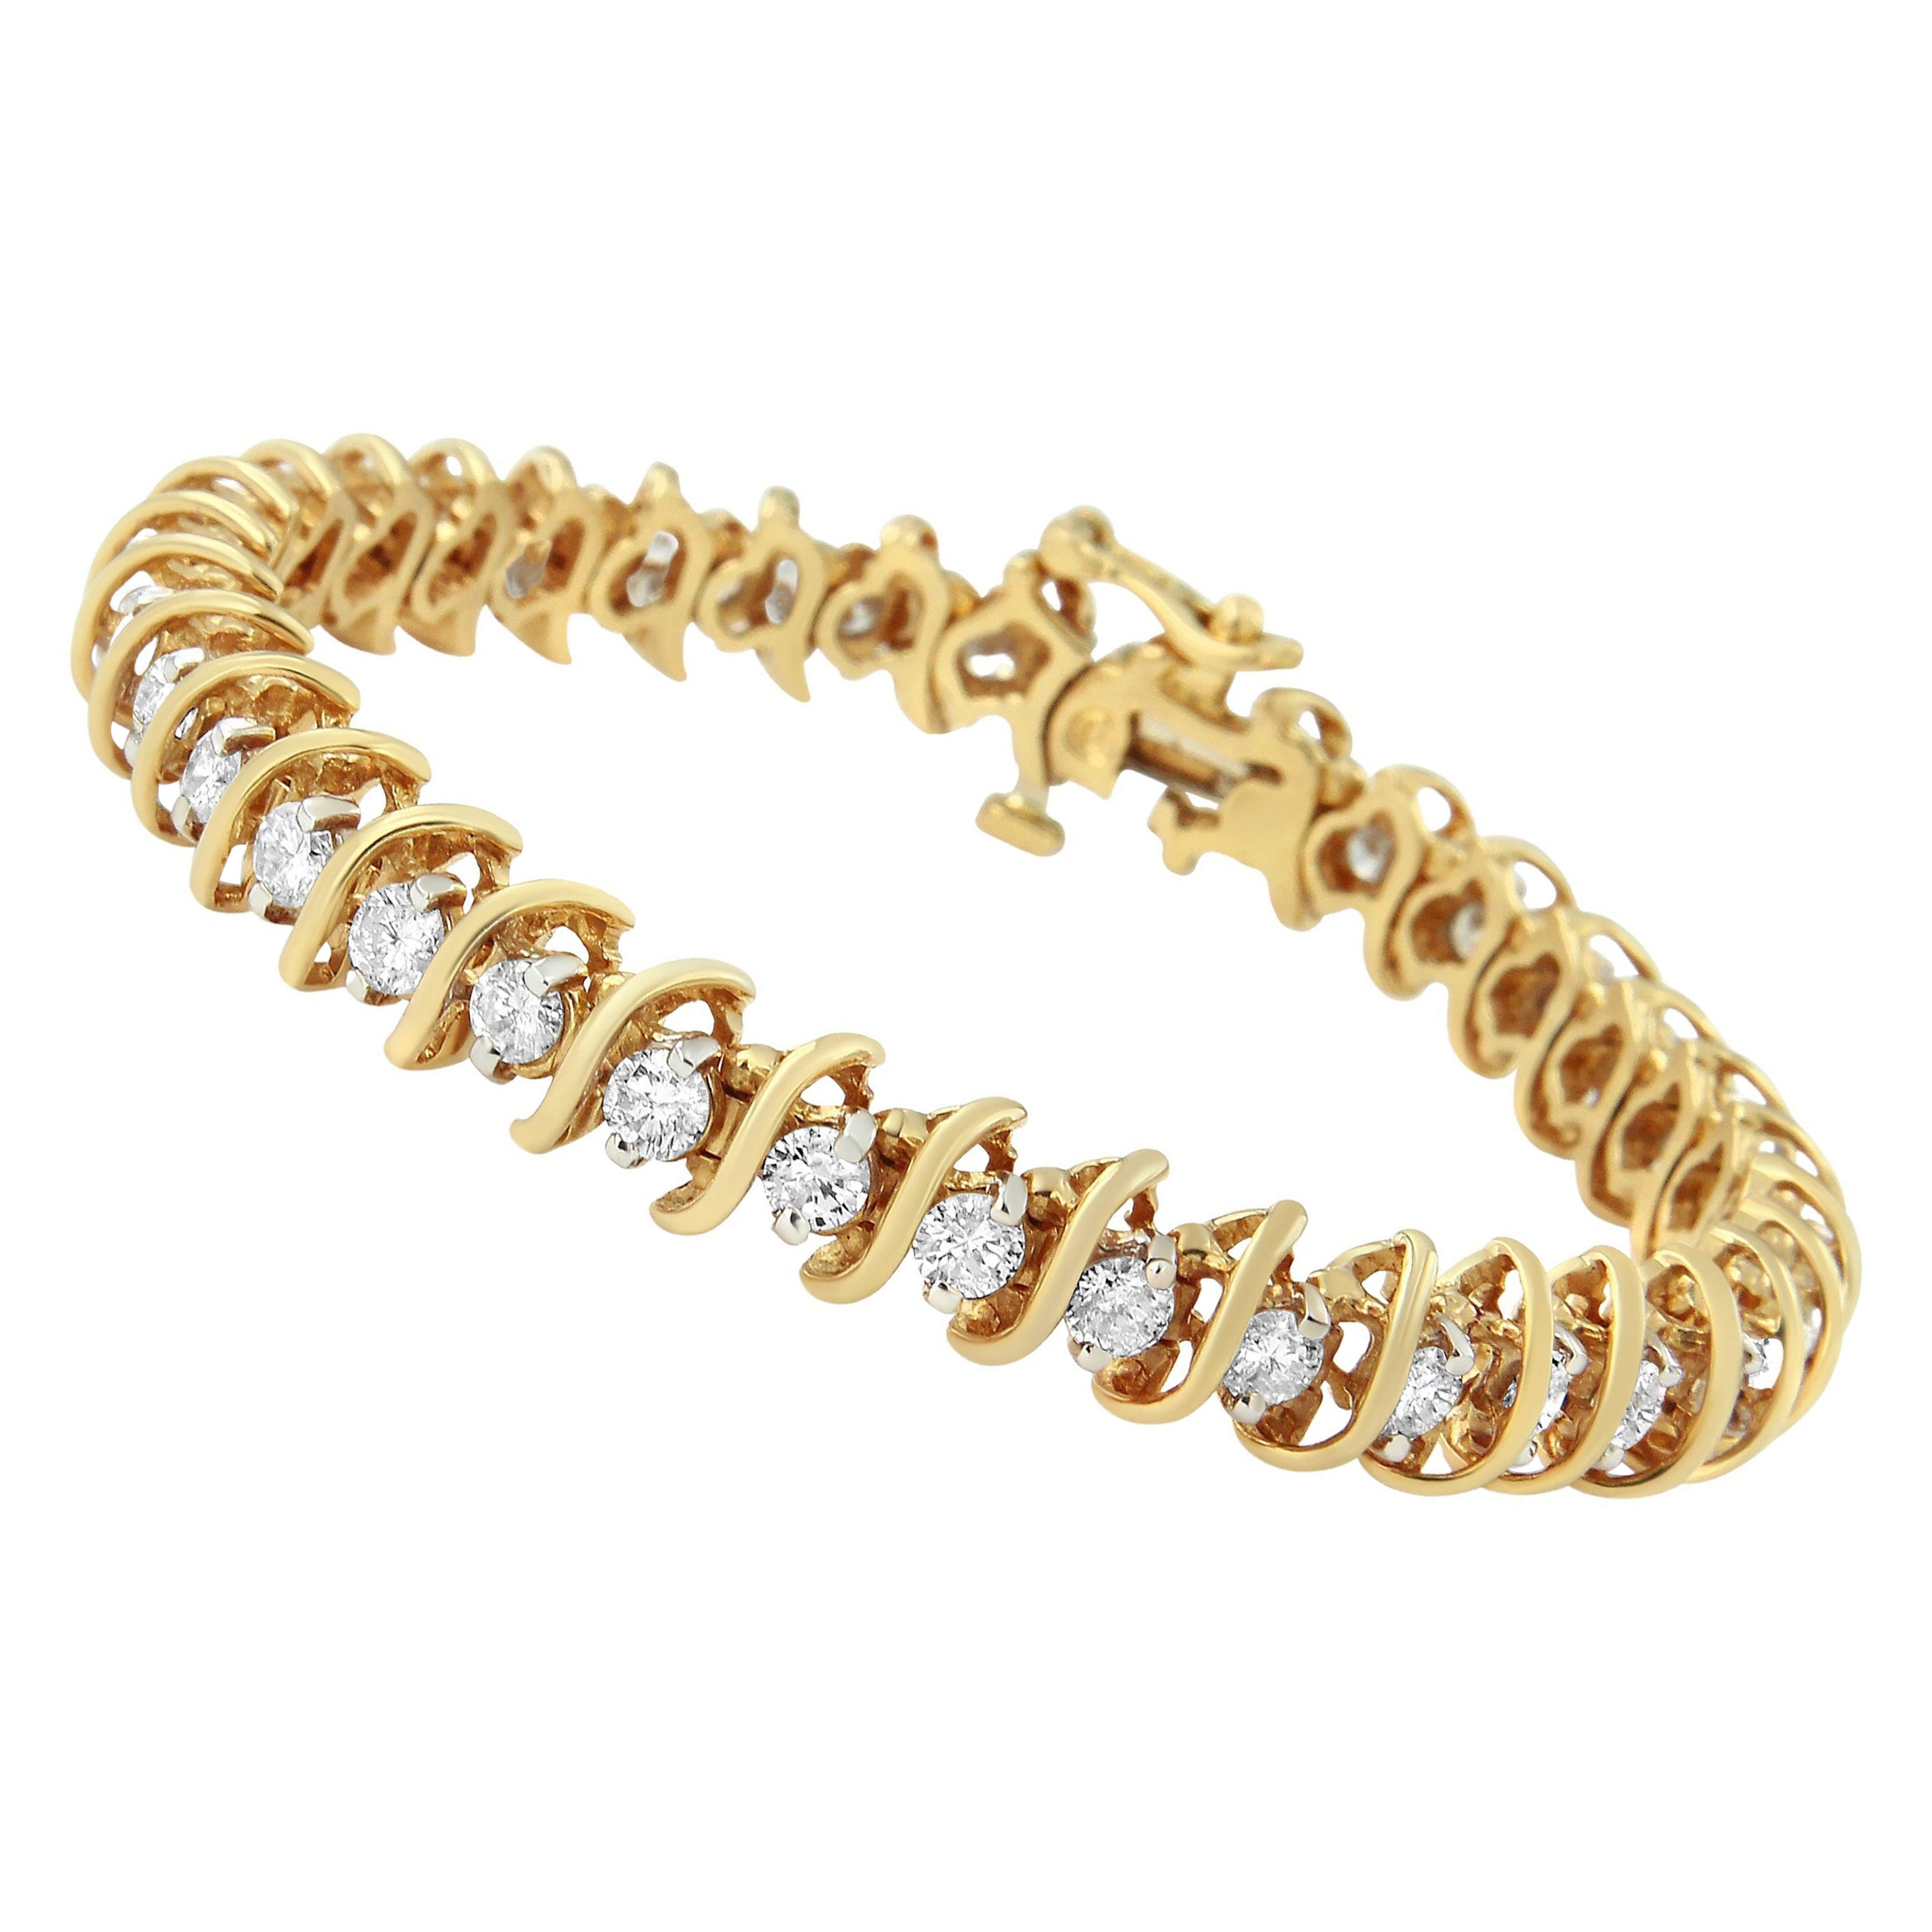 Bracelet tennis à maillons en or jaune 18 carats avec diamants ronds « S » certifiés AGS de 5,00 carats poids total